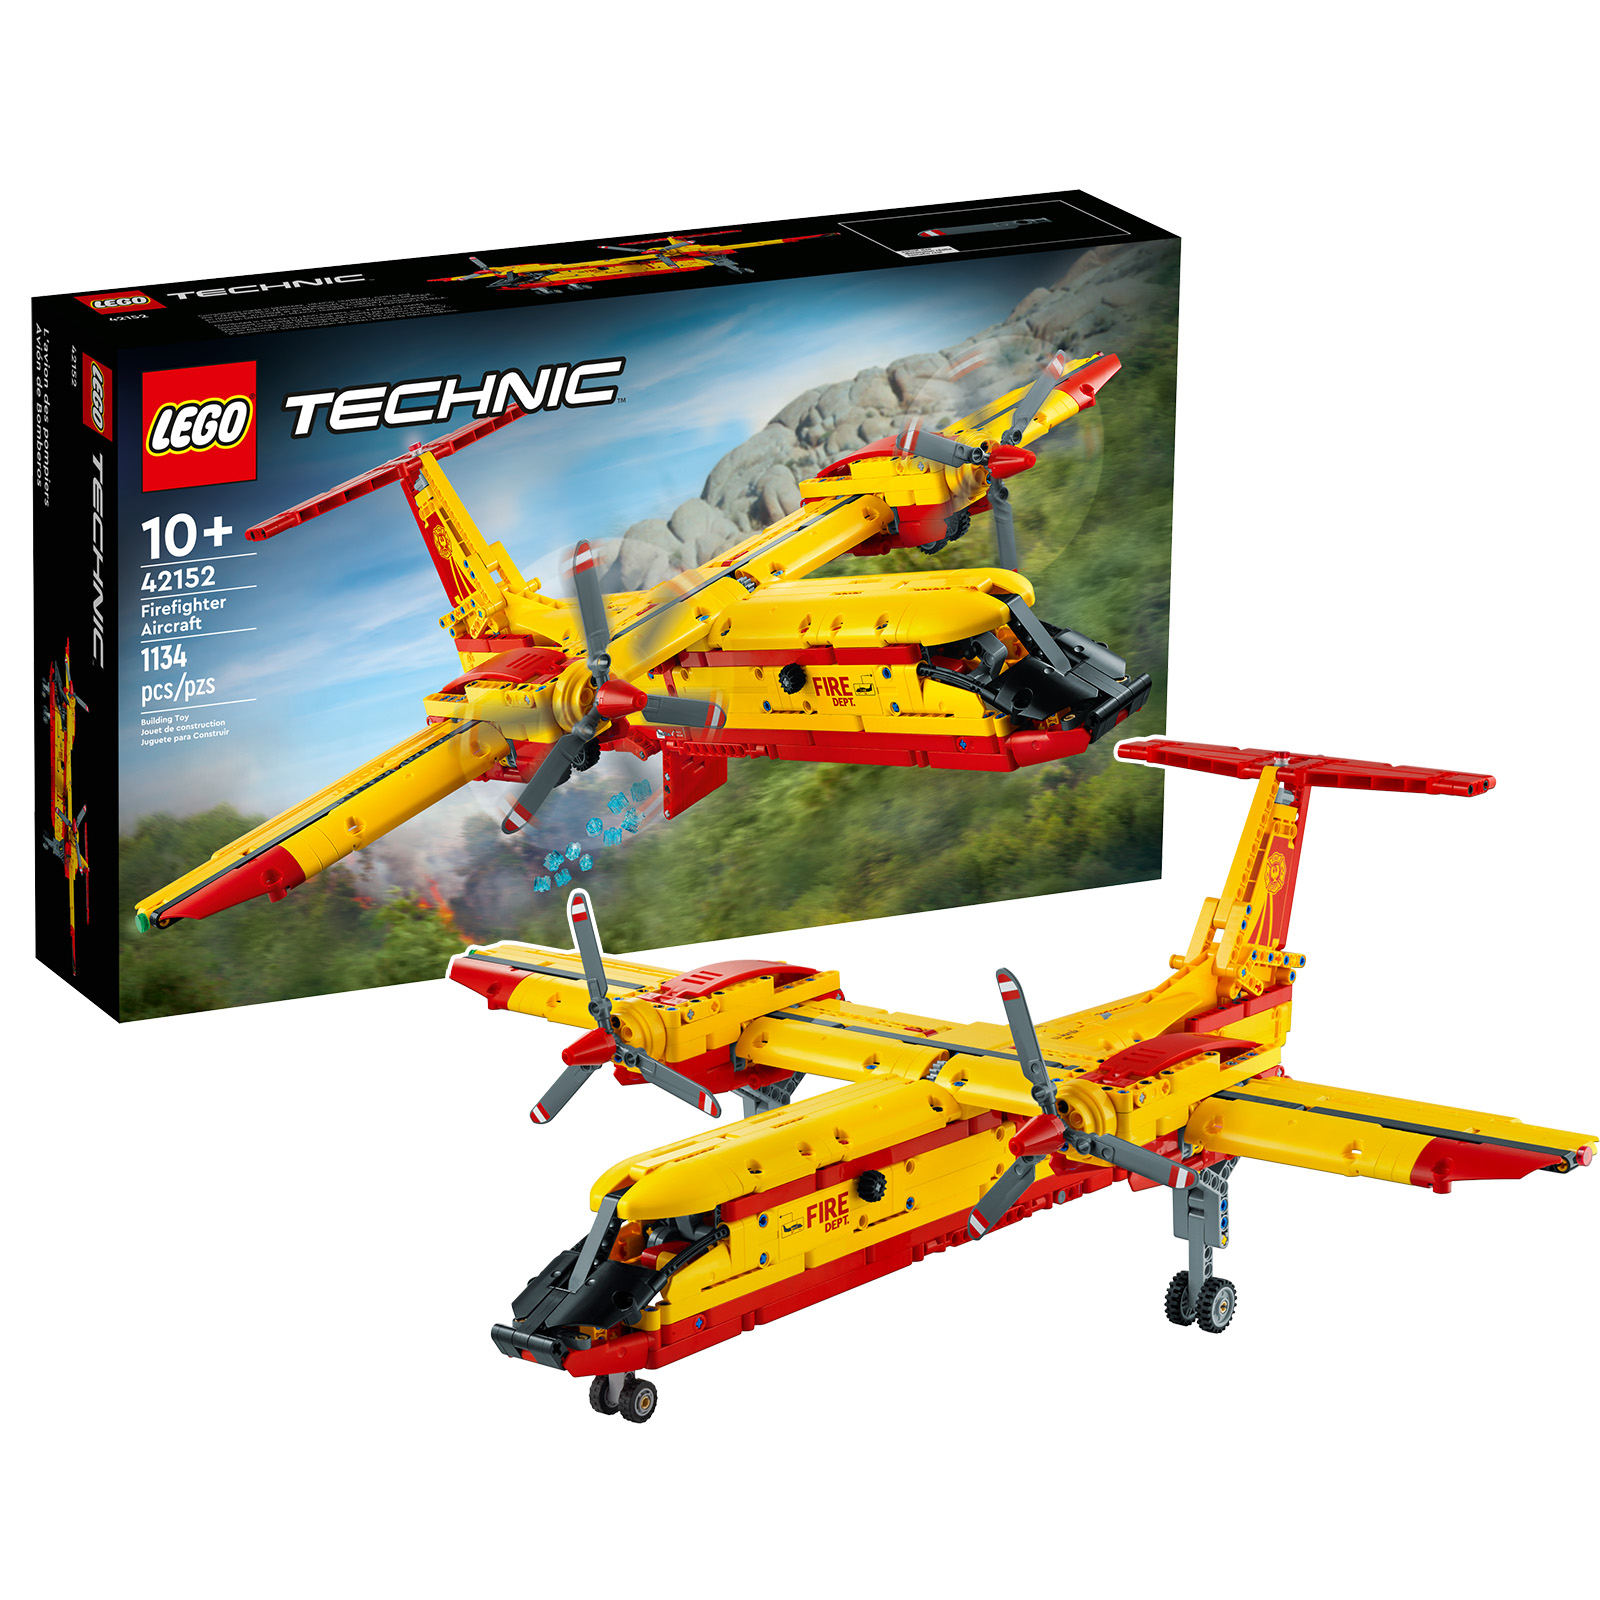 LEGO parduotuvėje: „LEGO Technic 42152 Firefighter Aircraft“ rinkinys yra iš anksto užsakytas